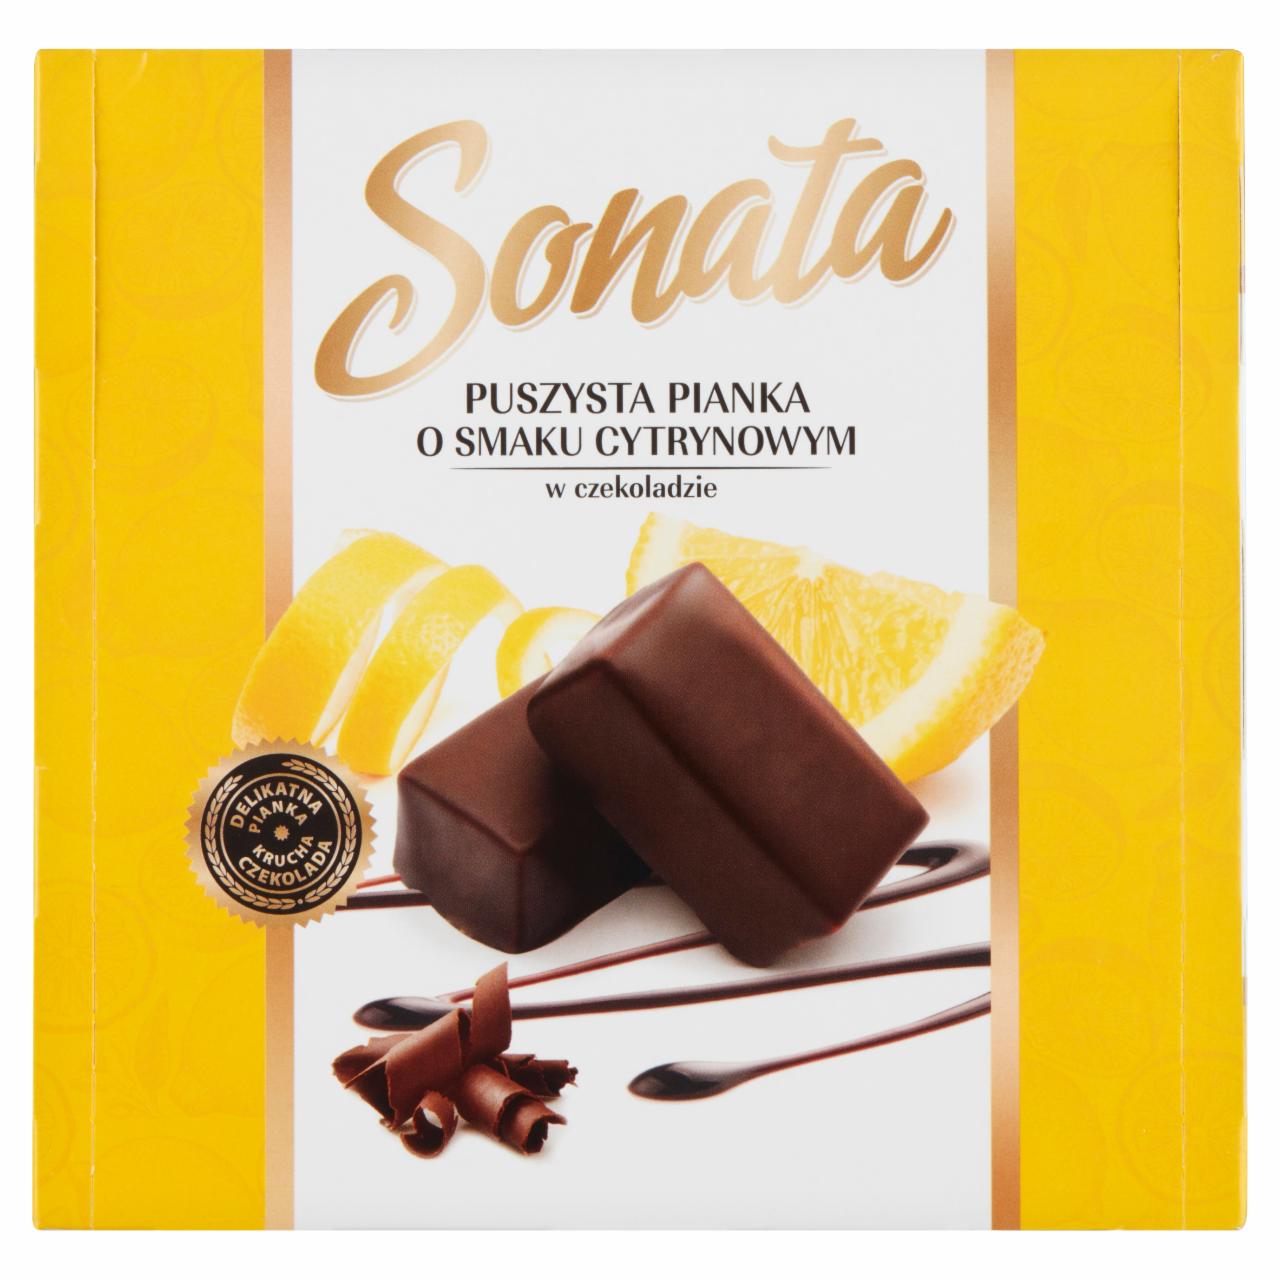 Zdjęcia - Sonata Puszysta pianka o smaku cytrynowym w czekoladzie 380 g